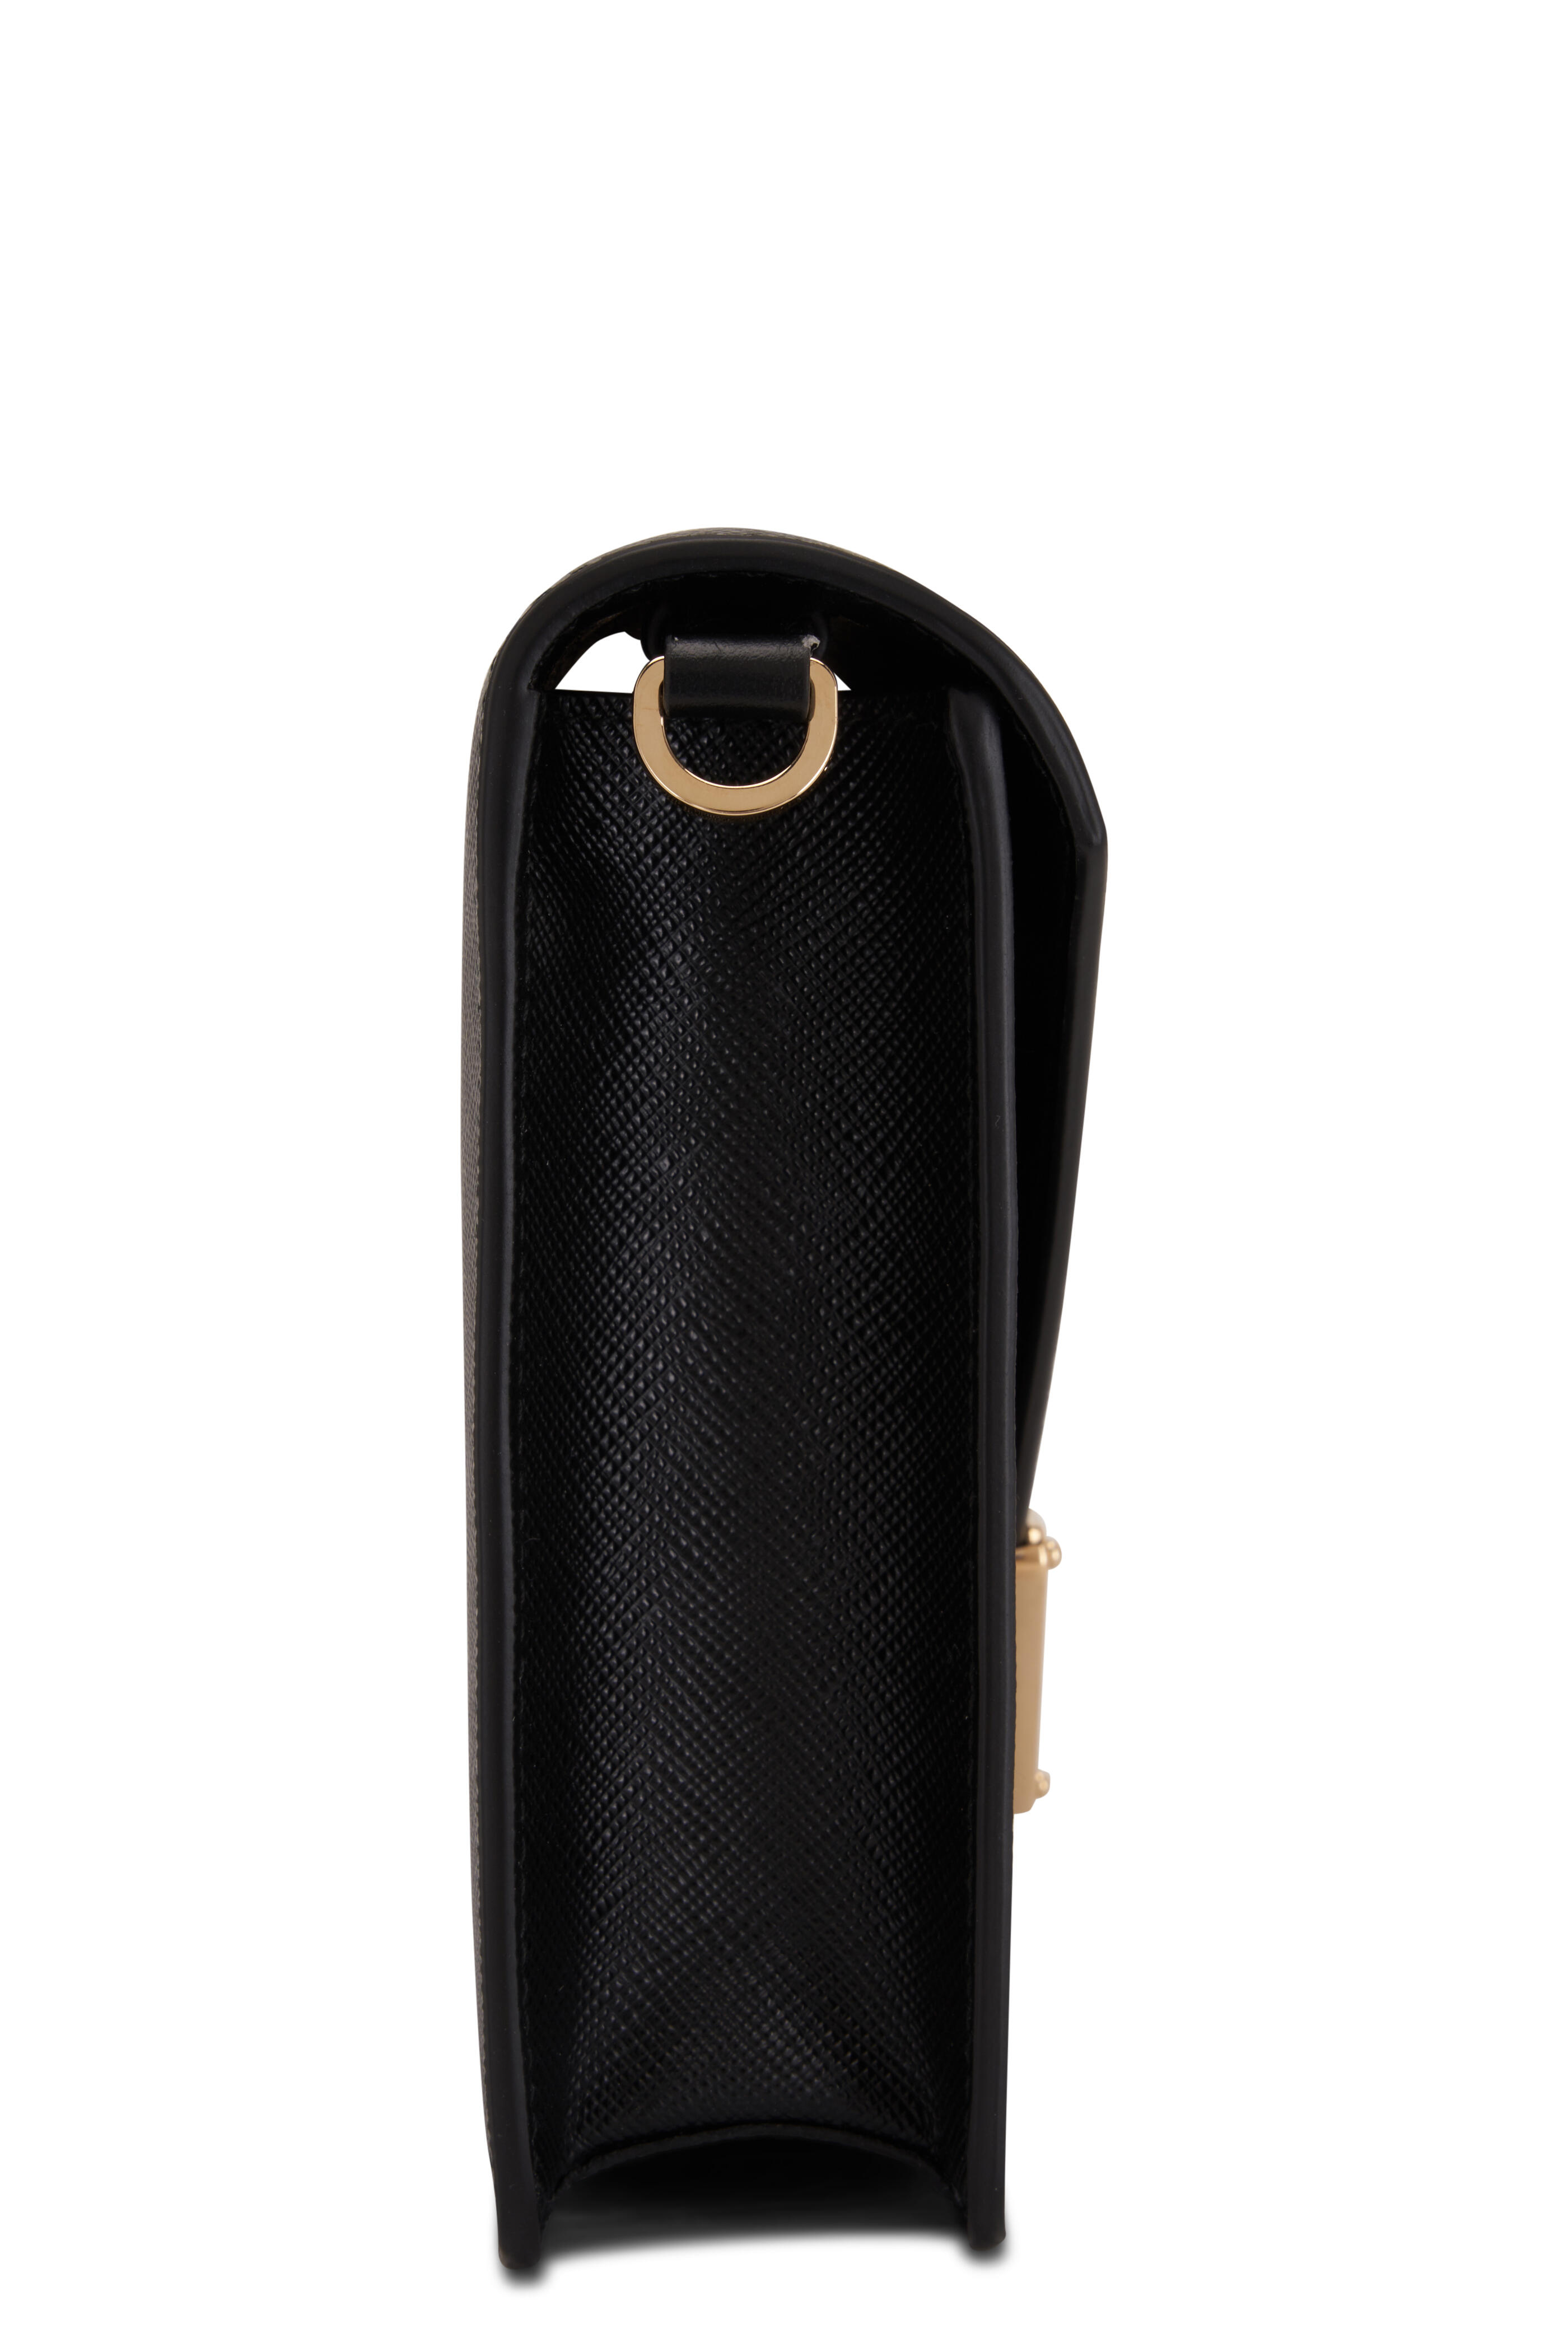 Prada Monochrome Shoulder Bag Saffiano Leather Medium Neutral 1493684